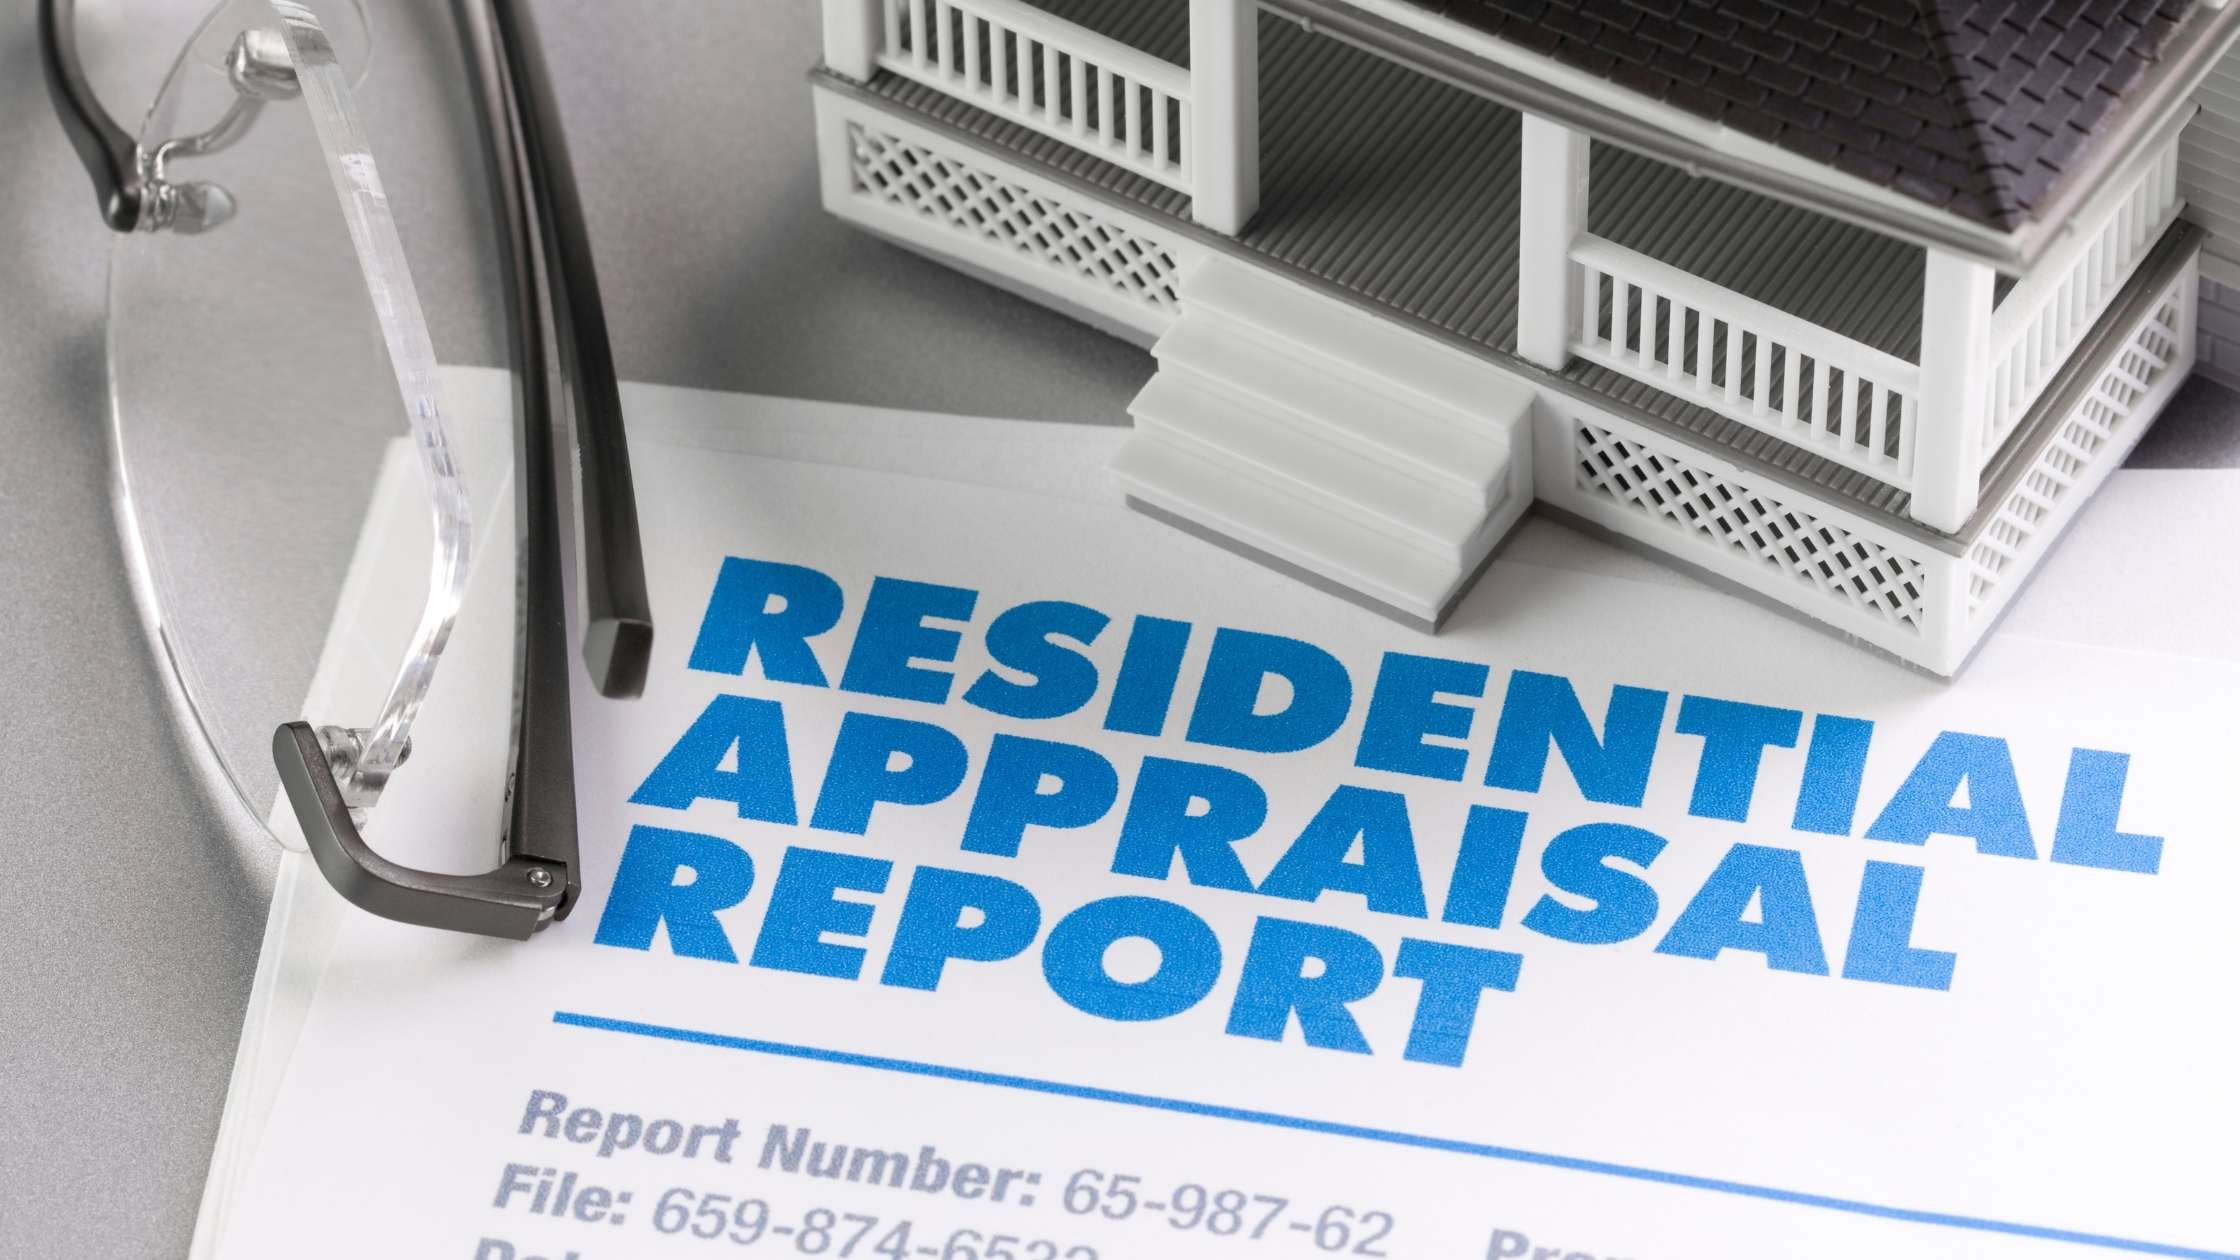 Home Inspection v. Home Appraisal